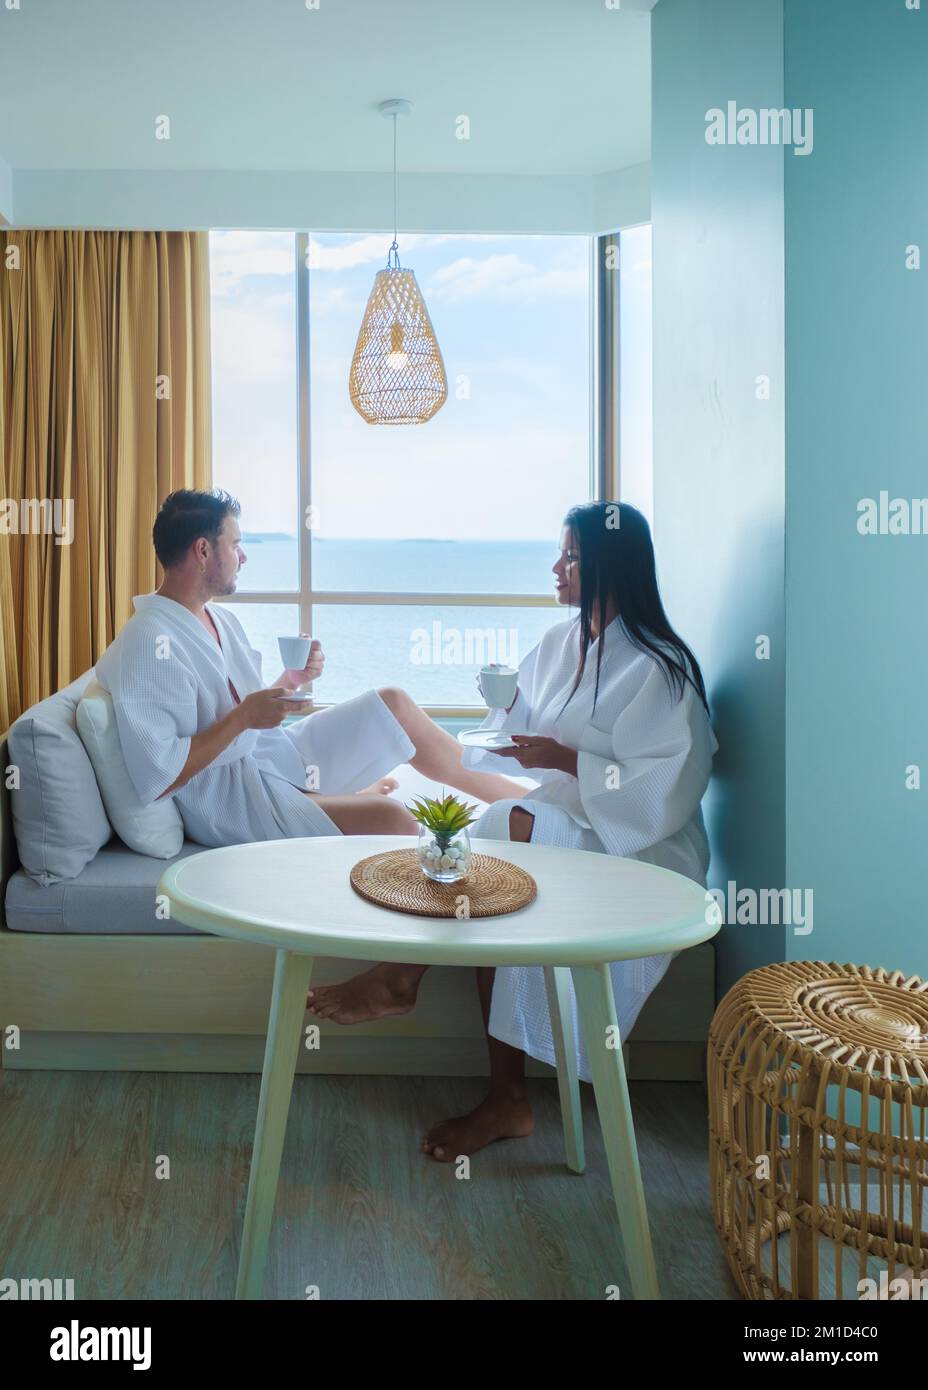 Ein paar asiatische Frauen und weiße Männer trinken Kaffee in einem Hotelzimmer mit Blick auf das Meer in Thailand Stockfoto